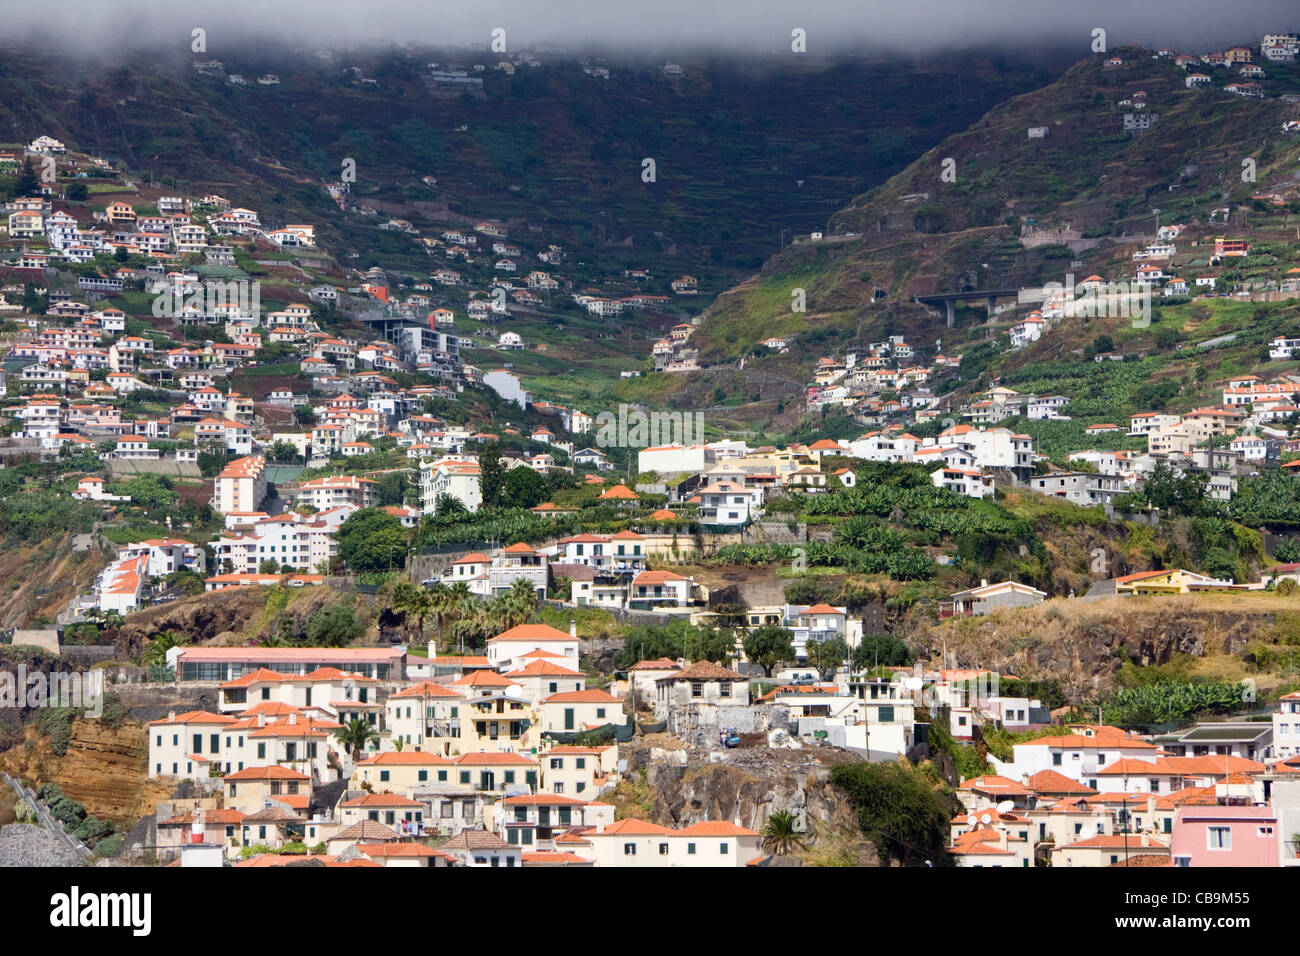 Camara de Lobos, near Funchal, Madeira Stock Photo